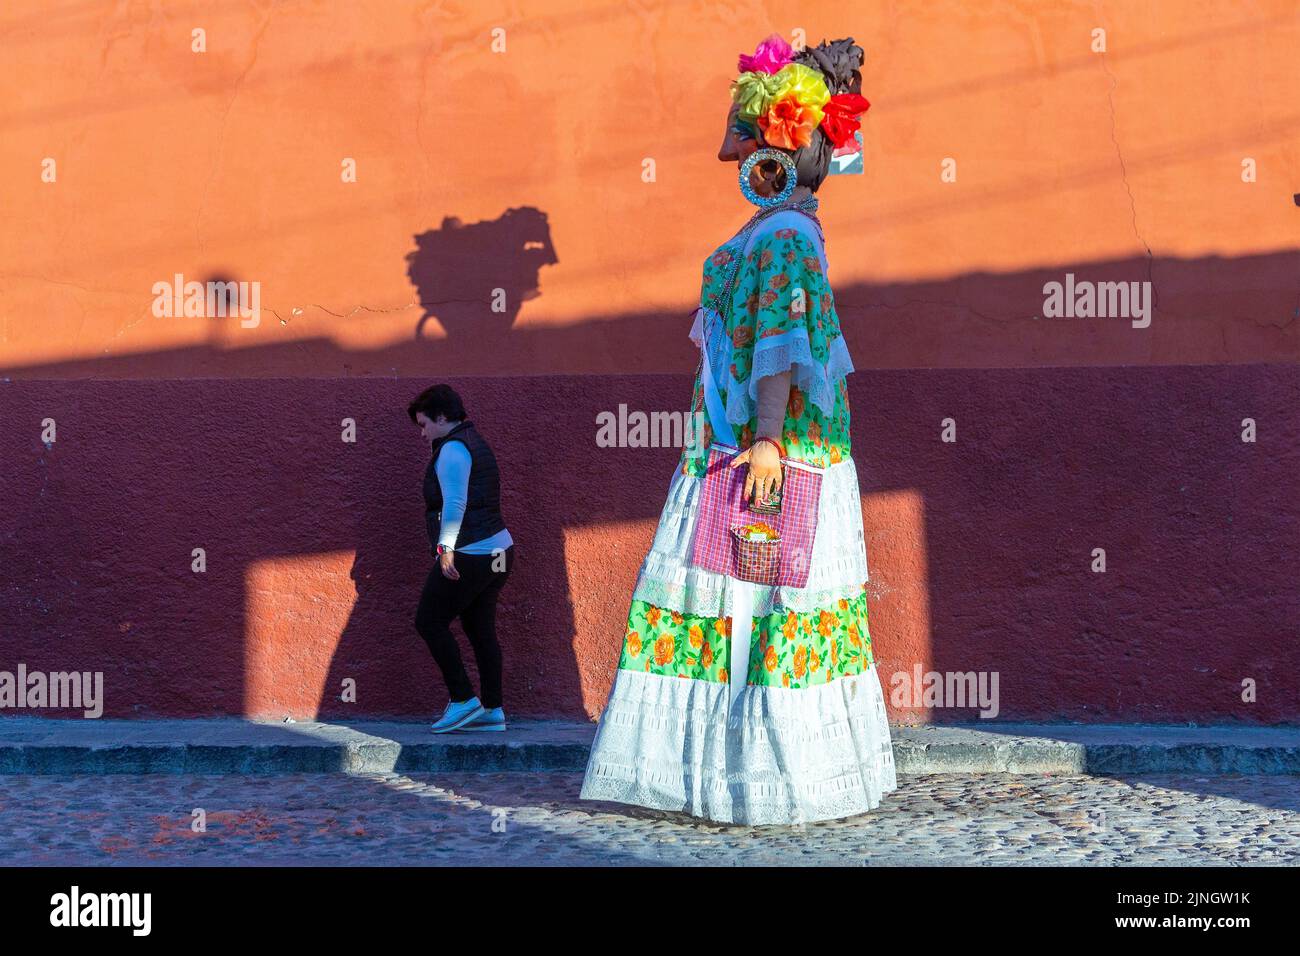 Una mujer pasa por un mojiganga, o marioneta gigante hecha del papier mâché mientras camina por el centro histórico de la ciudad de San Miguel de Allende, México. Foto de stock